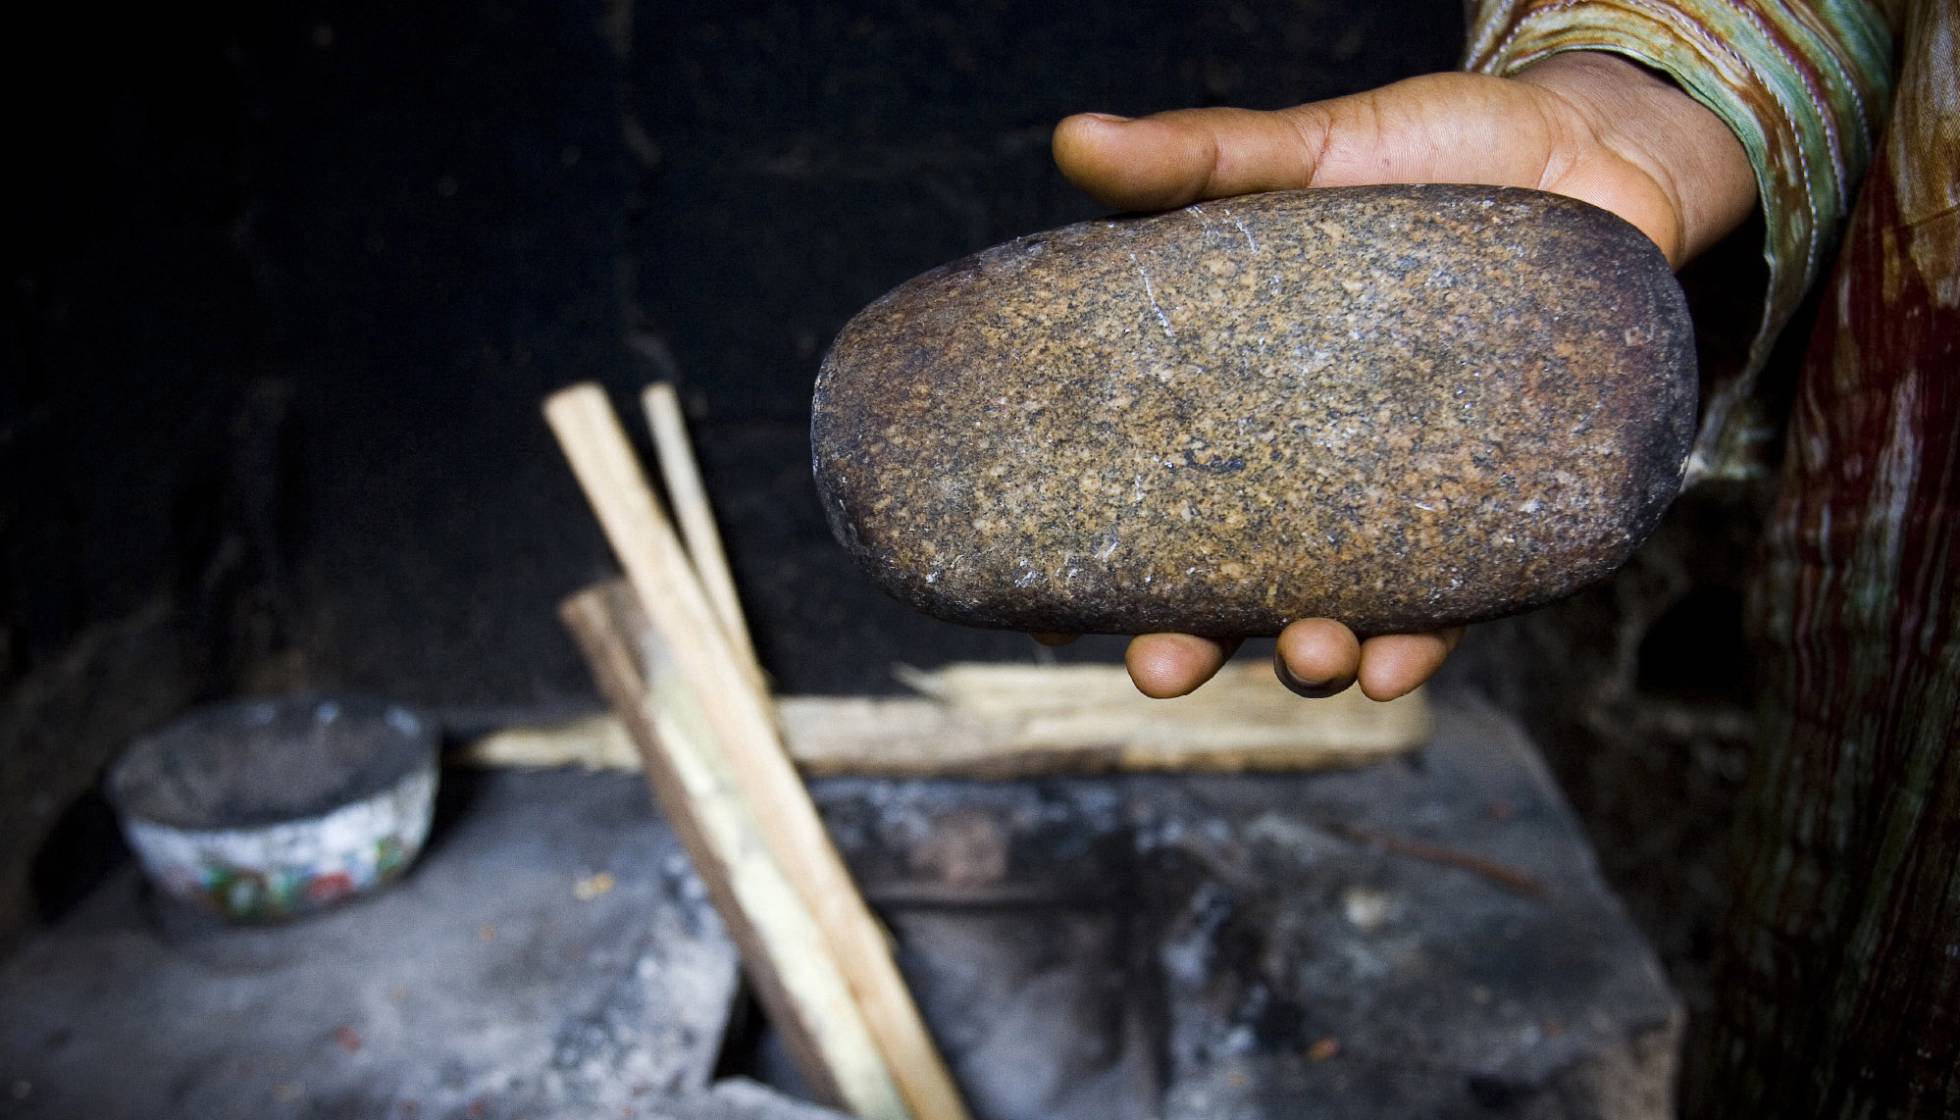 Philomena, de 39 años, usó esta piedra calentada al horno para planchar los pechos de sus hijas. Imagen tomada en Yaundé, Camerún, en 2007.